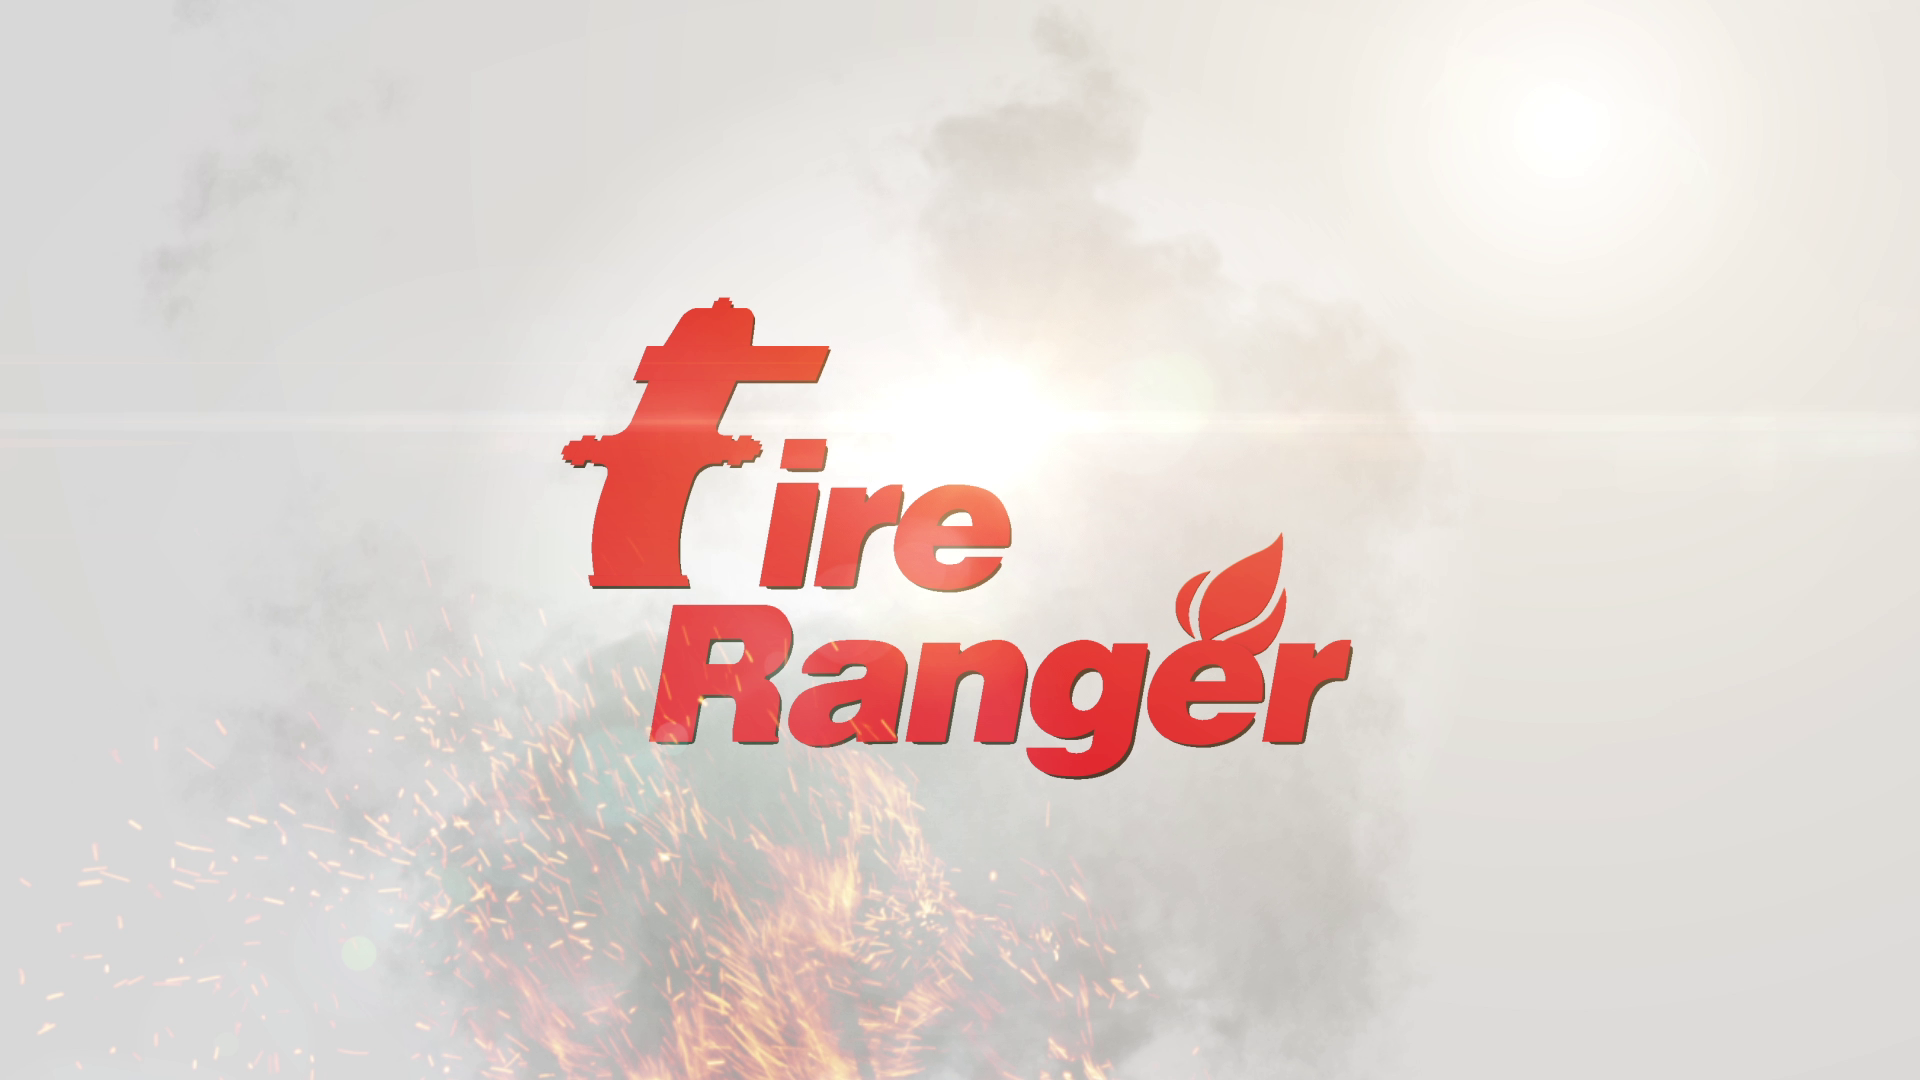 FireRanger Commercial Title FX